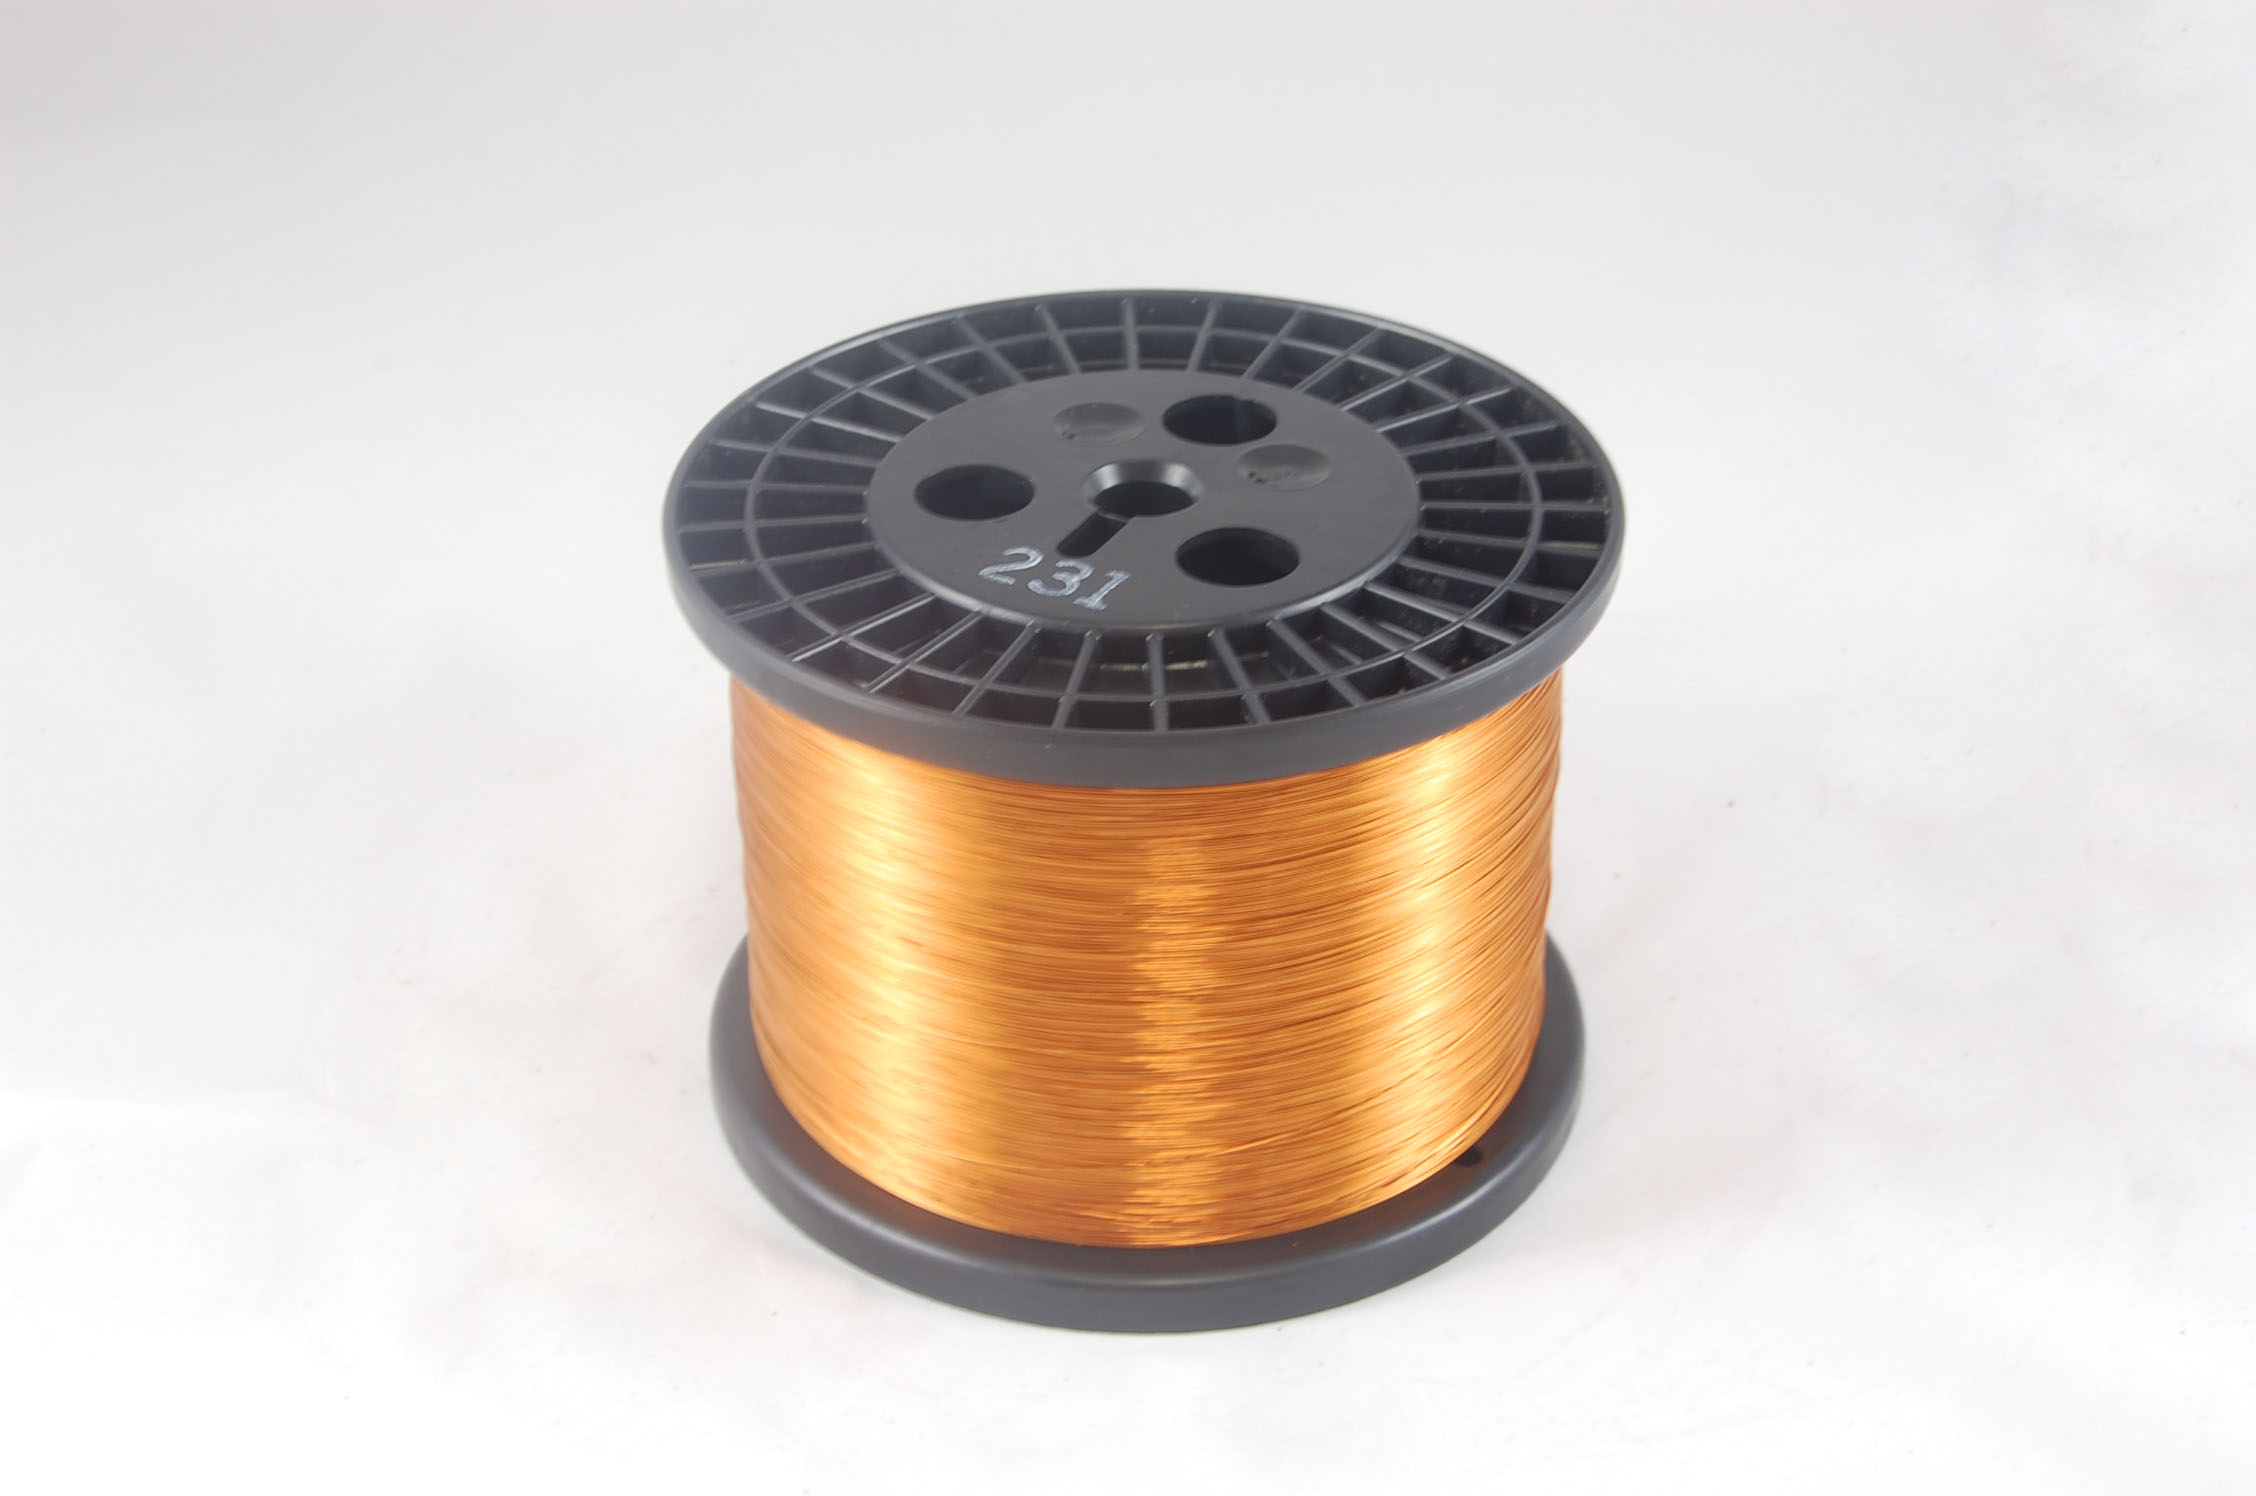 #14 Heavy GP/MR-200 Round MW 35 Copper Magnet Wire 200°C, copper, 10 LB 6" spool (average wght.)